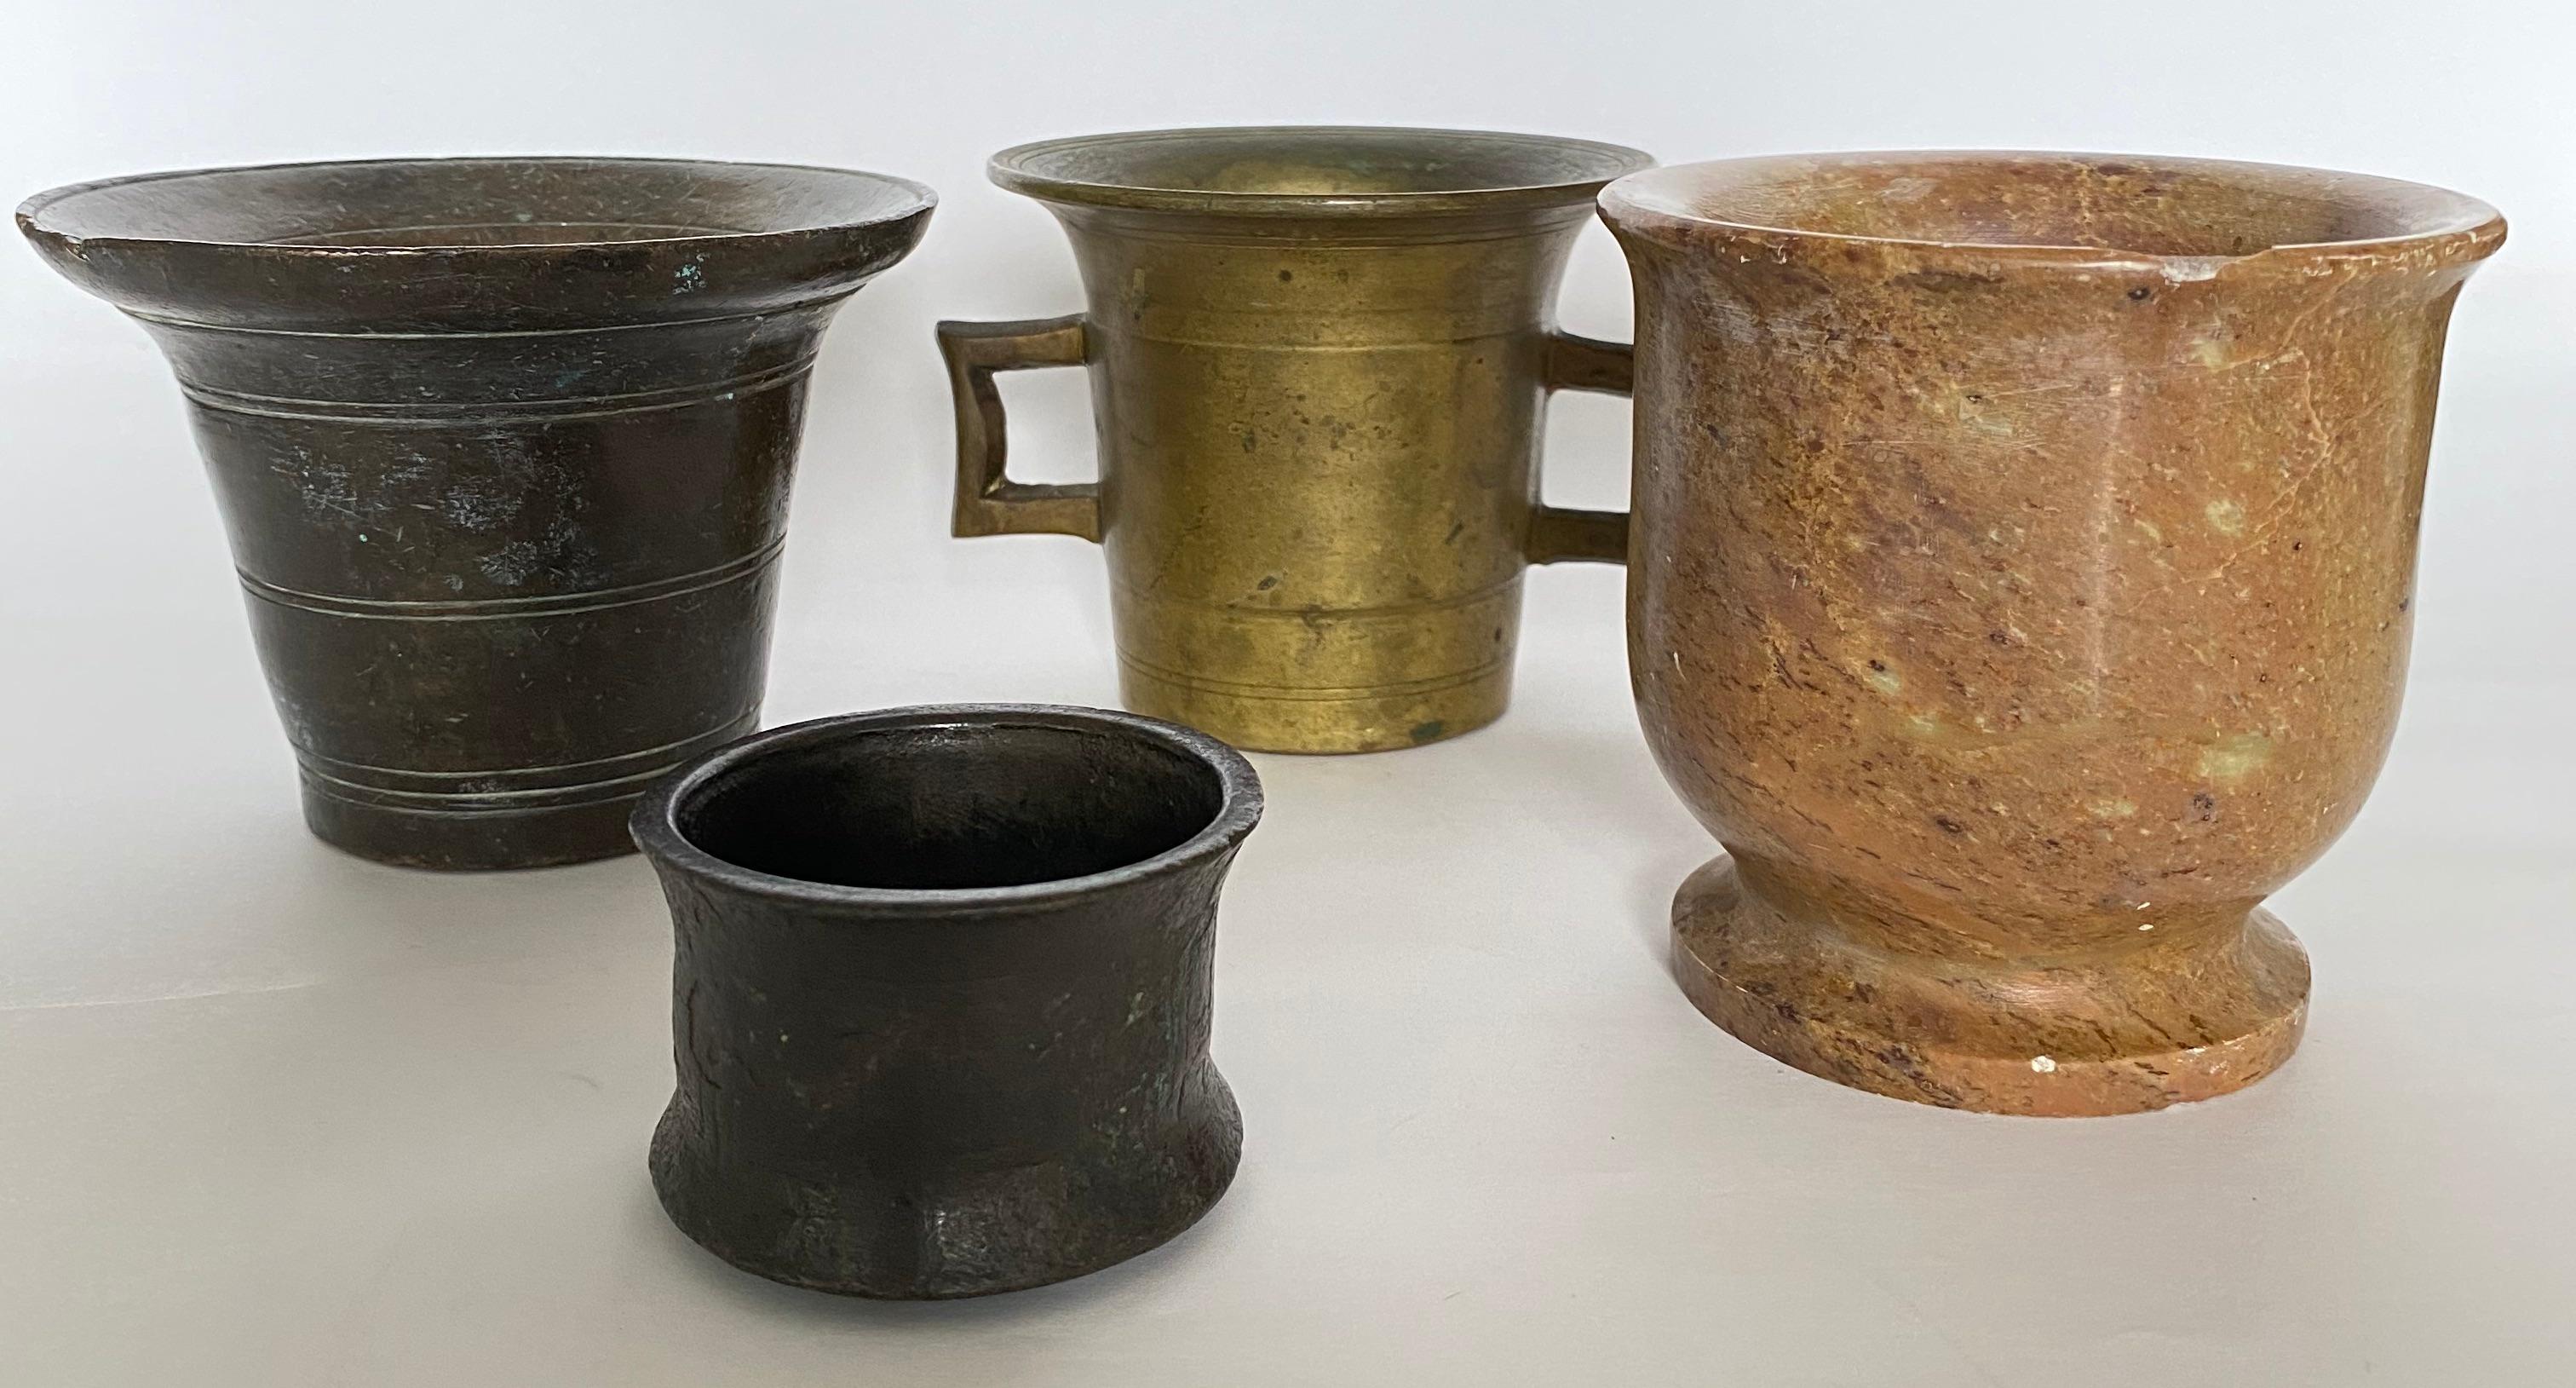 Charmante Sammlung von 4 alten europäischen Apotheken- und Kräutermörsern aus Bronze, Messing und Marmor aus dem 17. bis 20. Jedes zeigt Anzeichen von Gebrauchsspuren. Die Größe reicht von 1,75